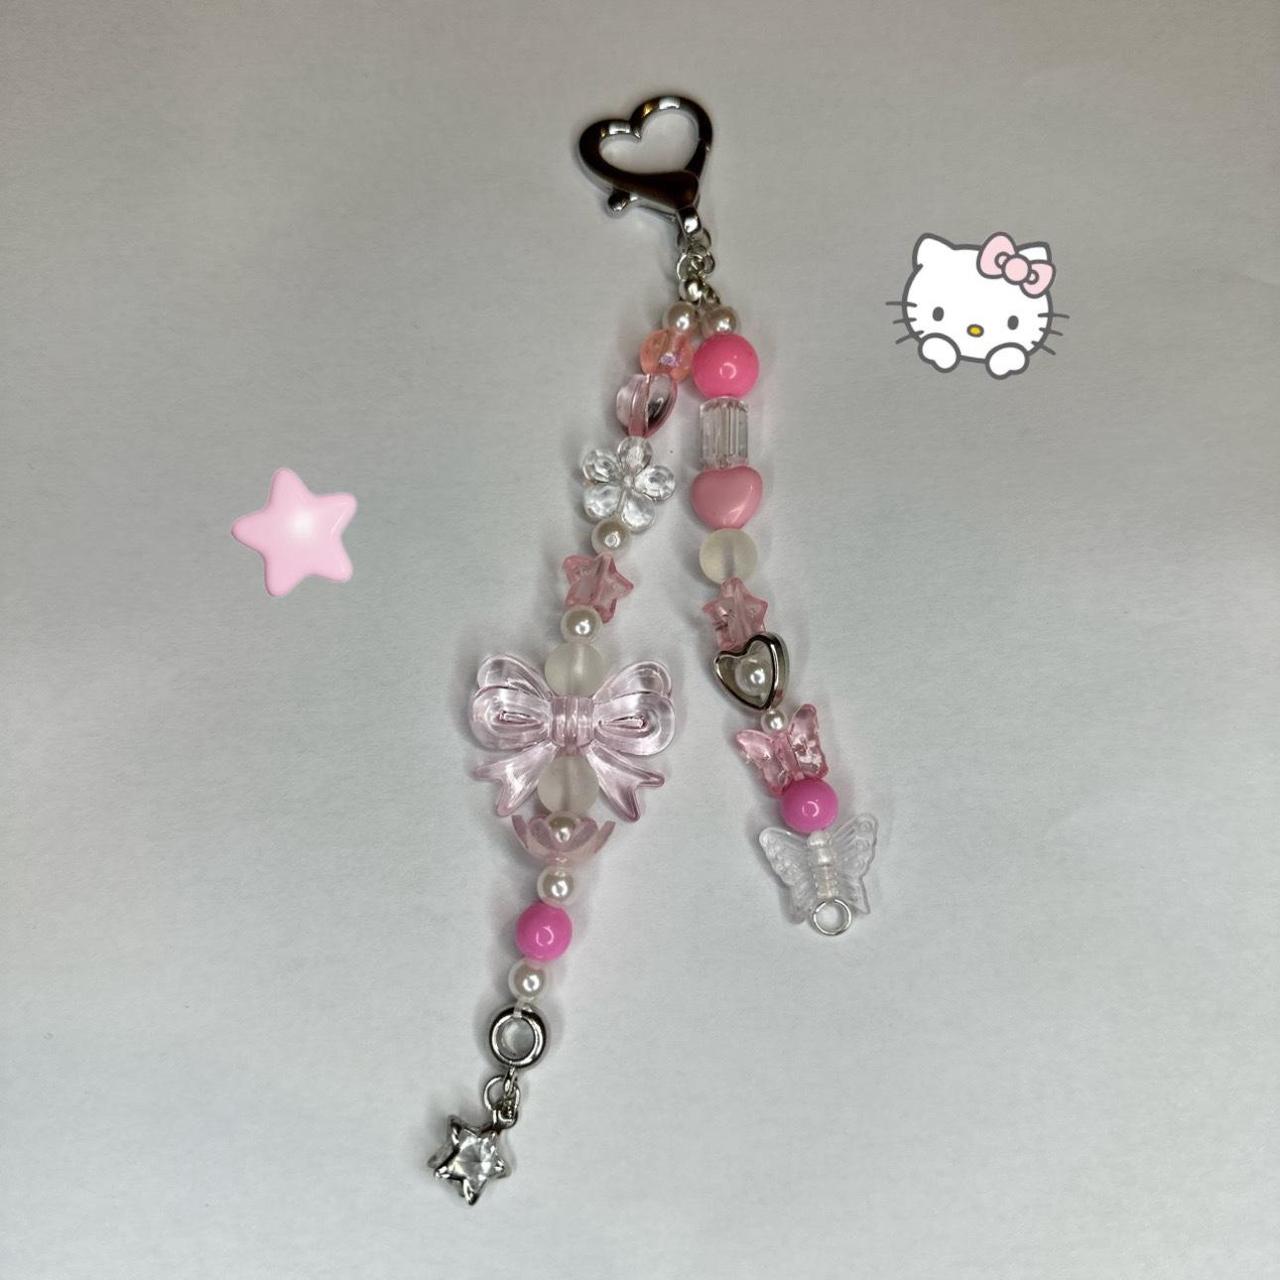 Handmade pink keychain - Depop